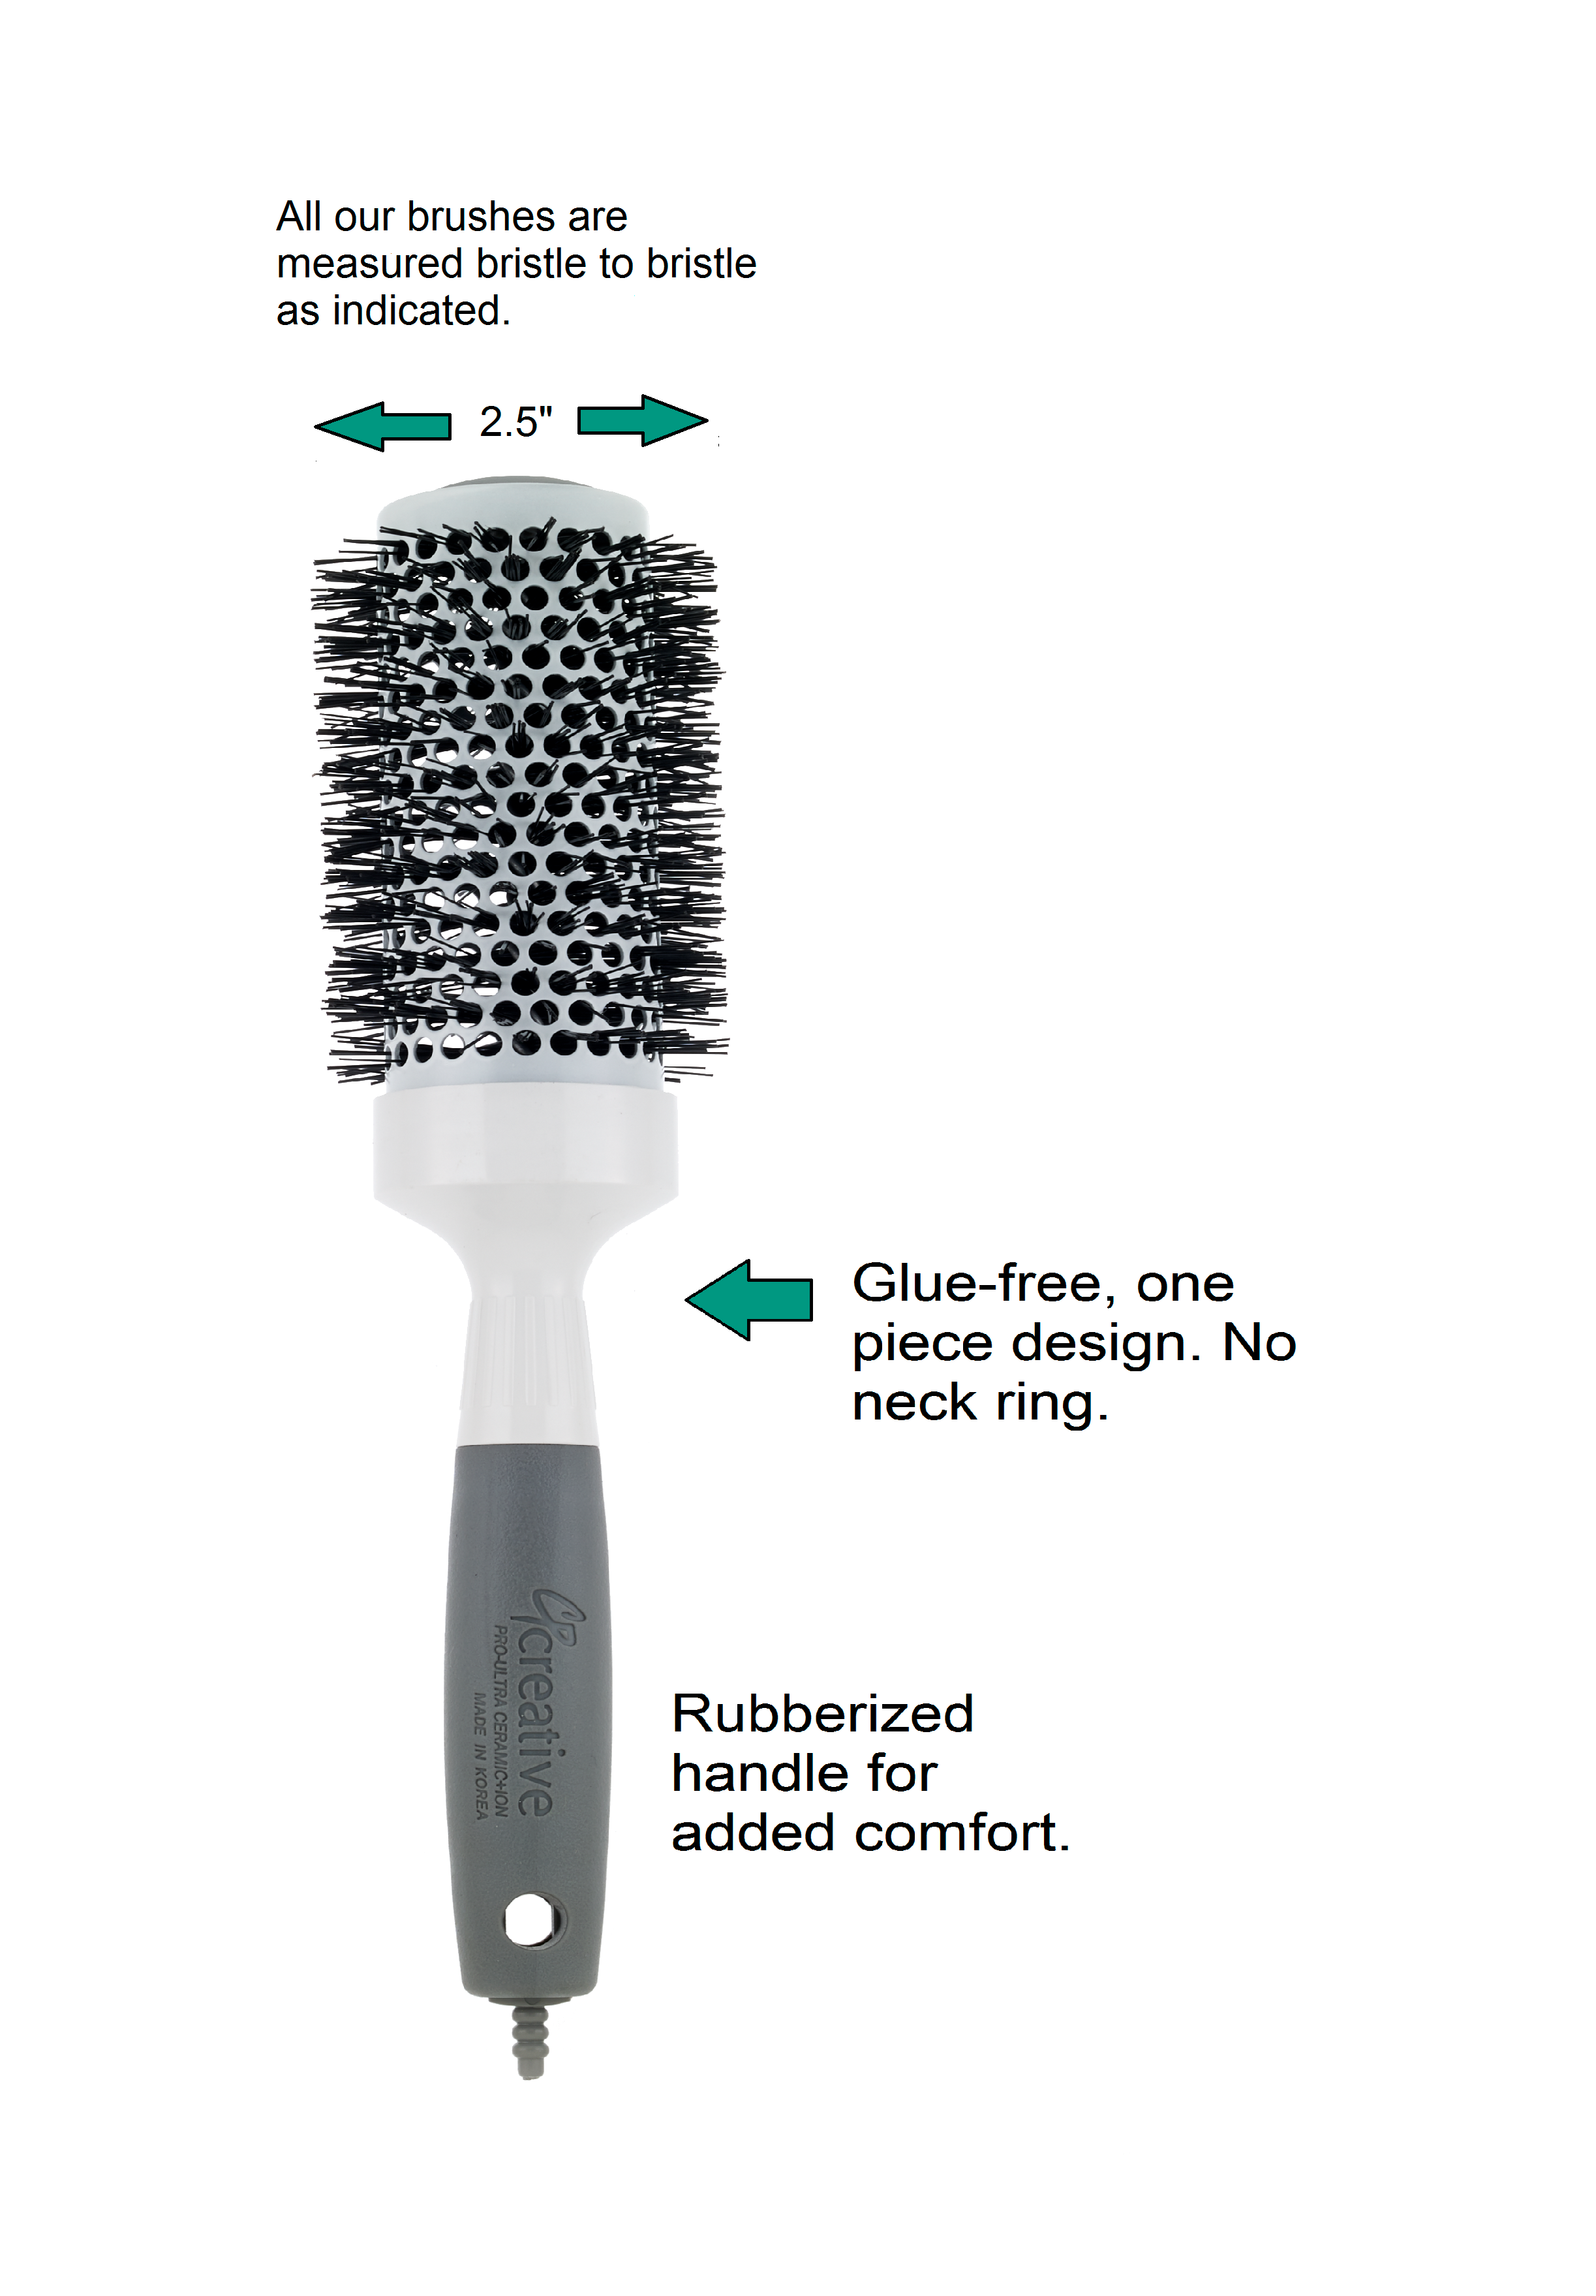 Round Hair Brush Size Chart